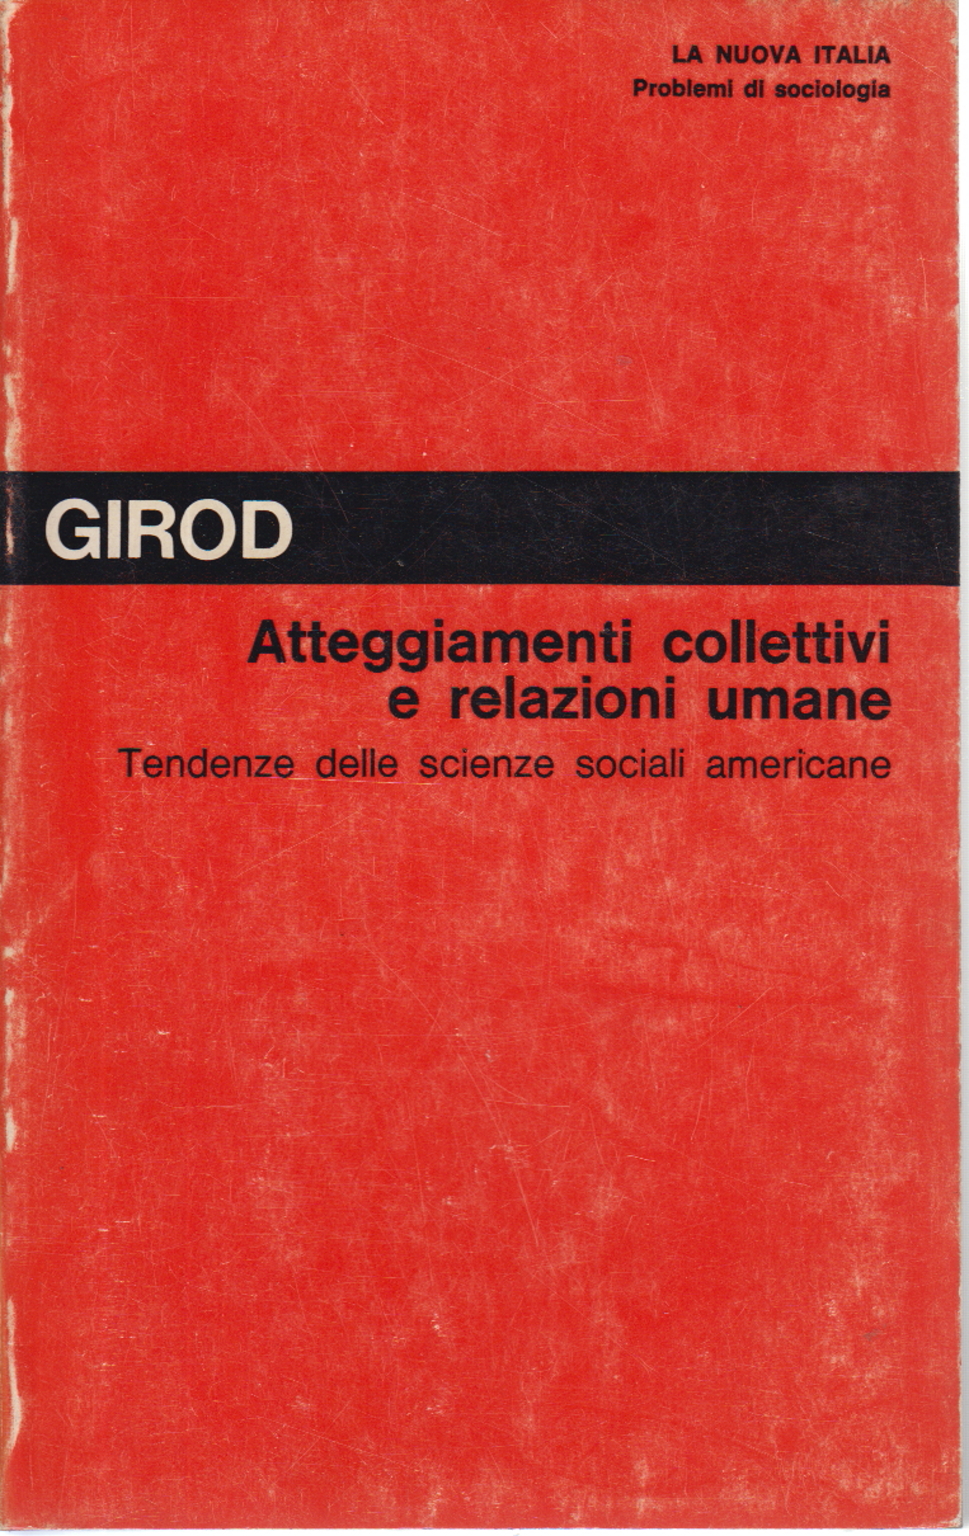 Atteggiamenti collettivi e relazioni umane, Roger Girod